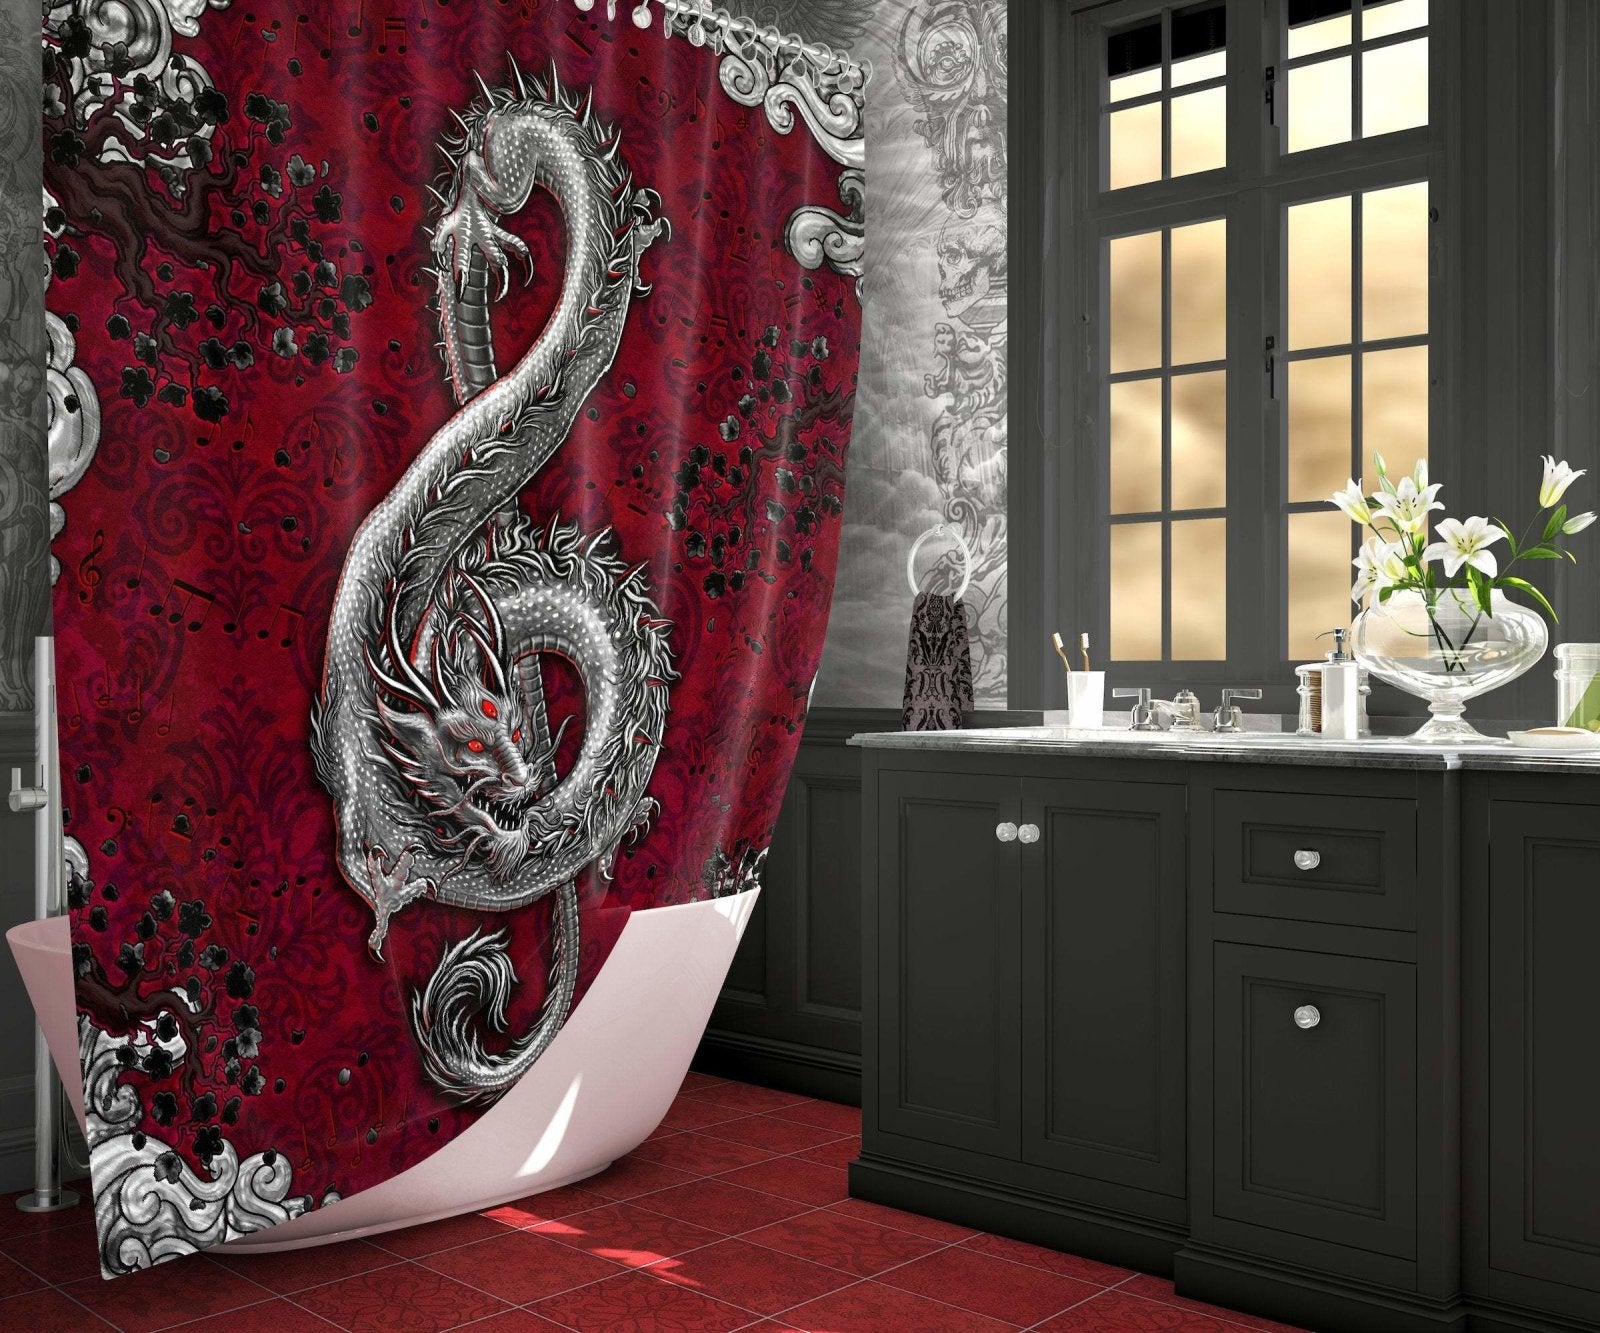 Gothic Shower Curtain, Music Art, Dragon Bathroom Decor, Treble Clef - Goth - Abysm Internal